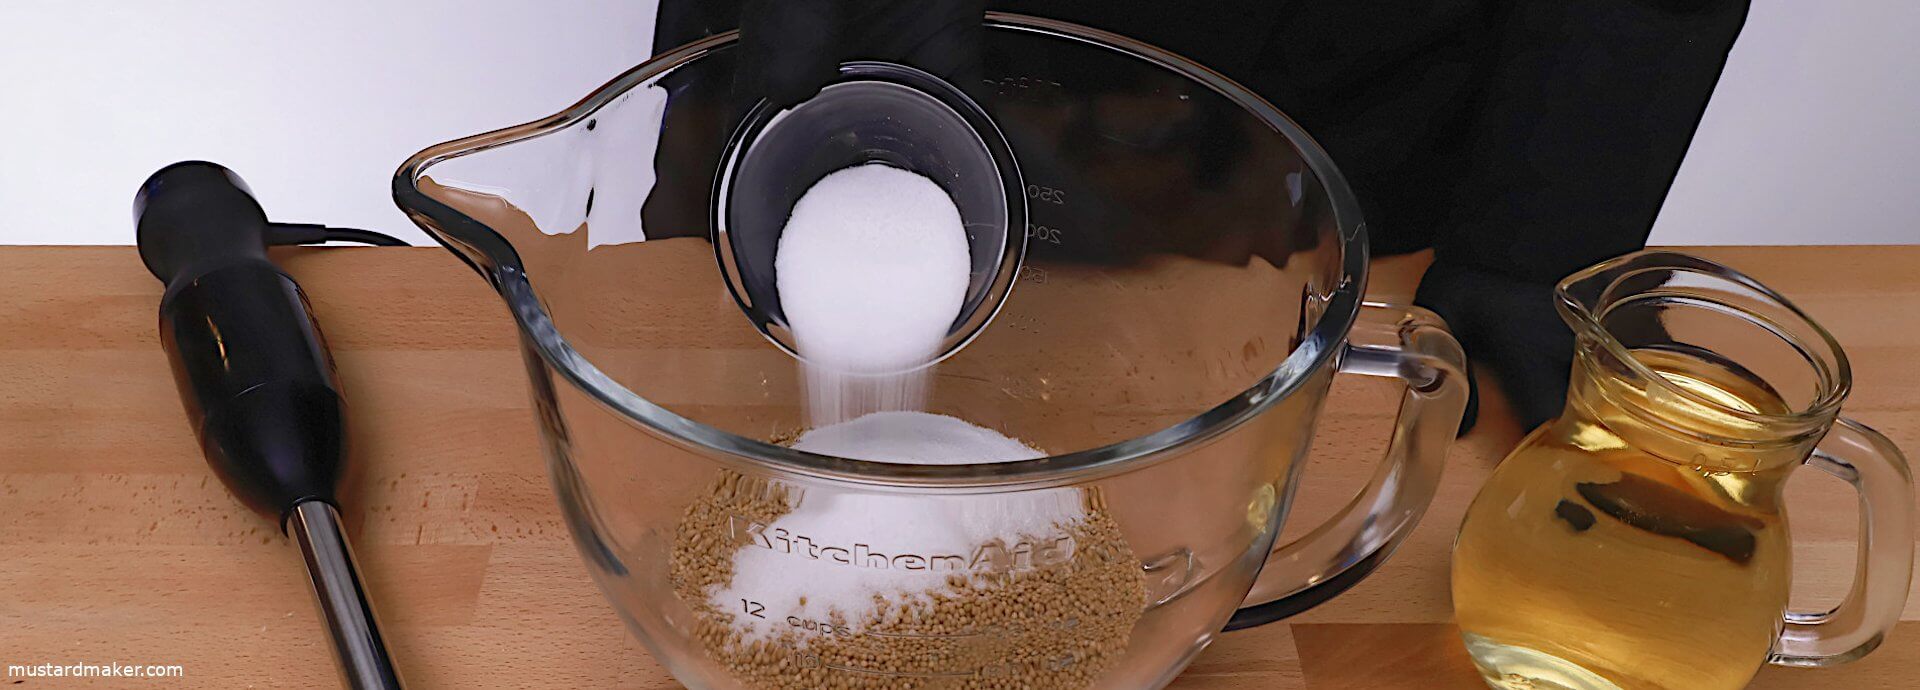 Schritt 2: Geben Sie Salz und nach Wunsch auch Zucker zu den Senfsamen.